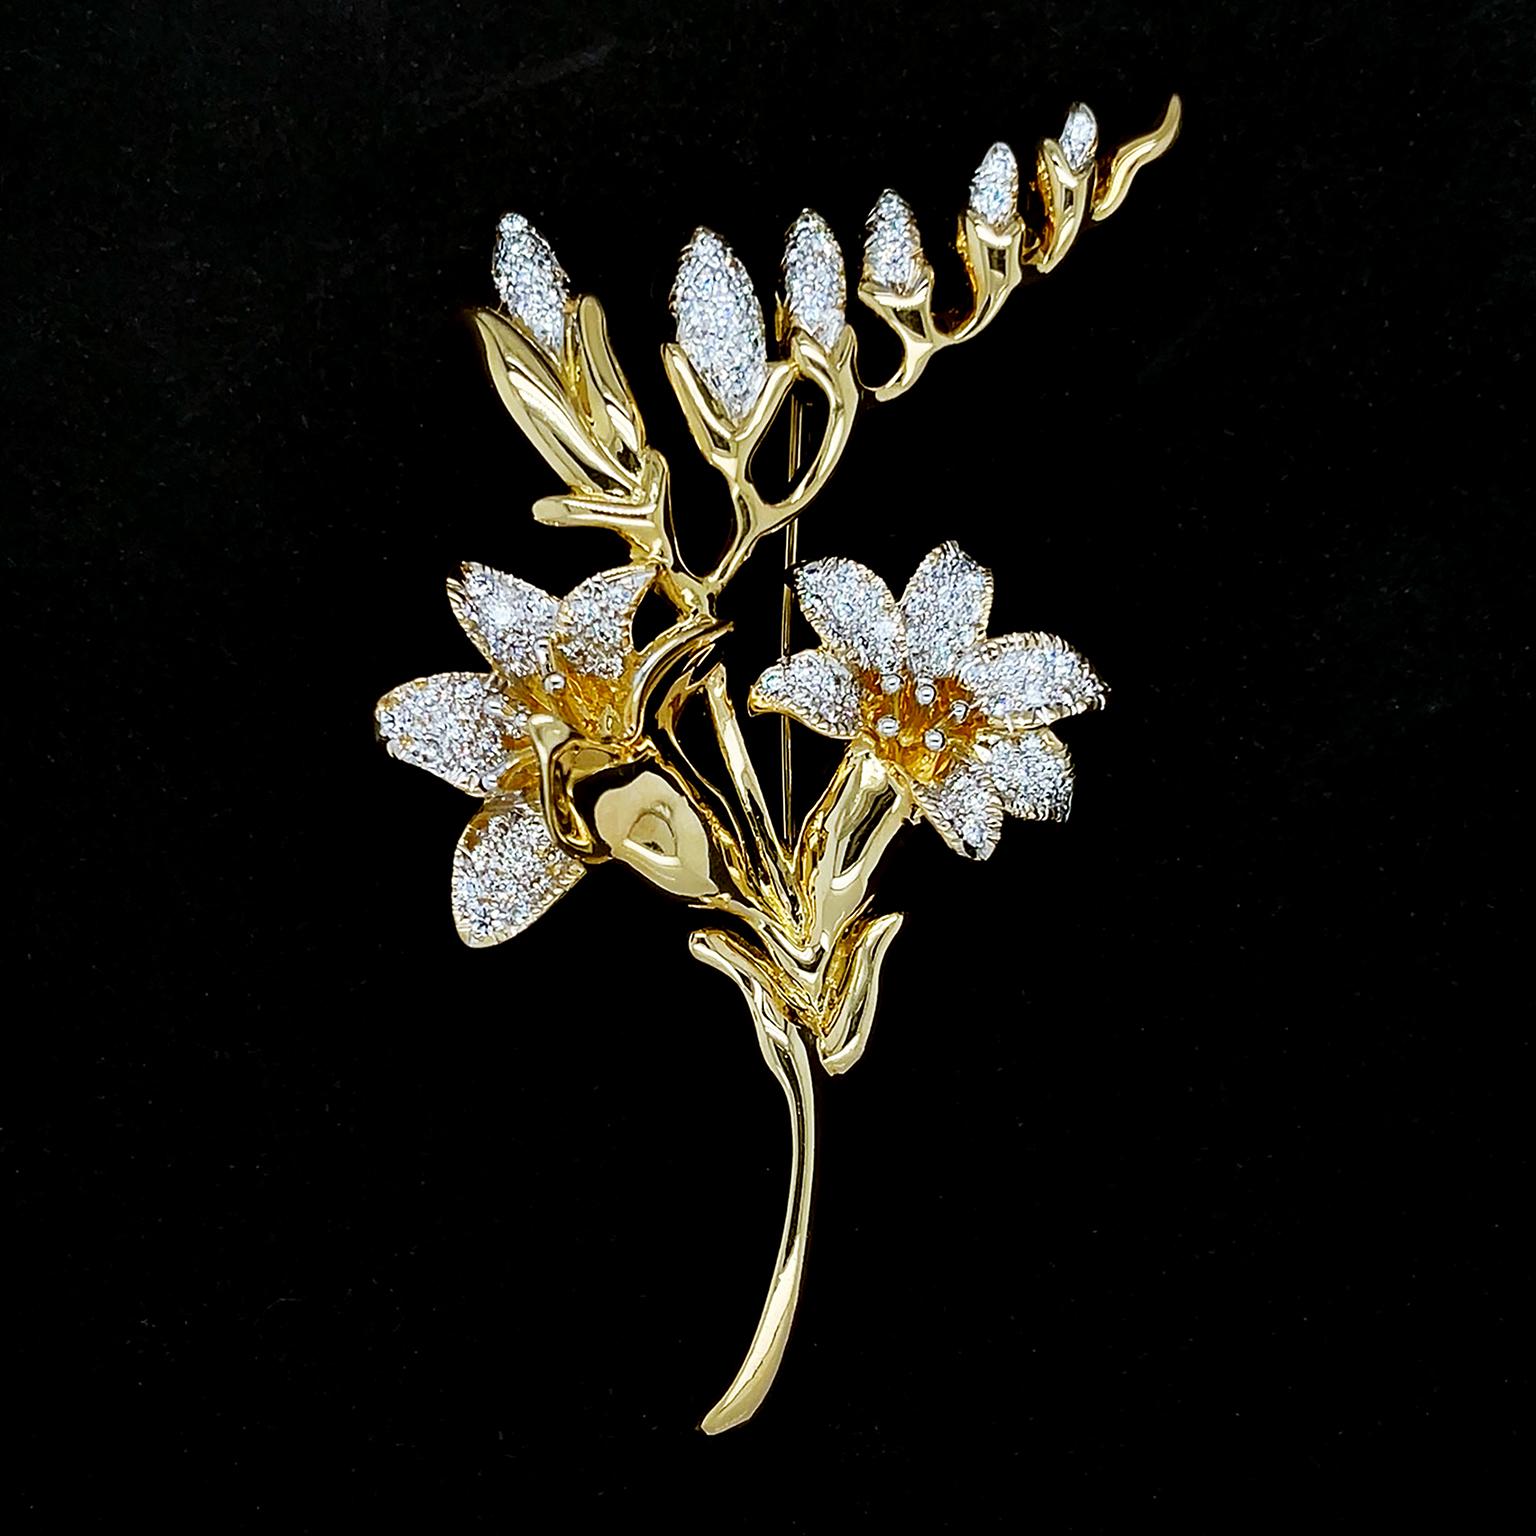 Cette broche s'inspire de fleurs épanouies. L'or jaune 18 carats forme les tiges et les feuilles, tandis que les diamants taille brillant sertis en pavé illustrent les pétales scintillants. Une tige asymétrique en or au-dessus des fleurs présente